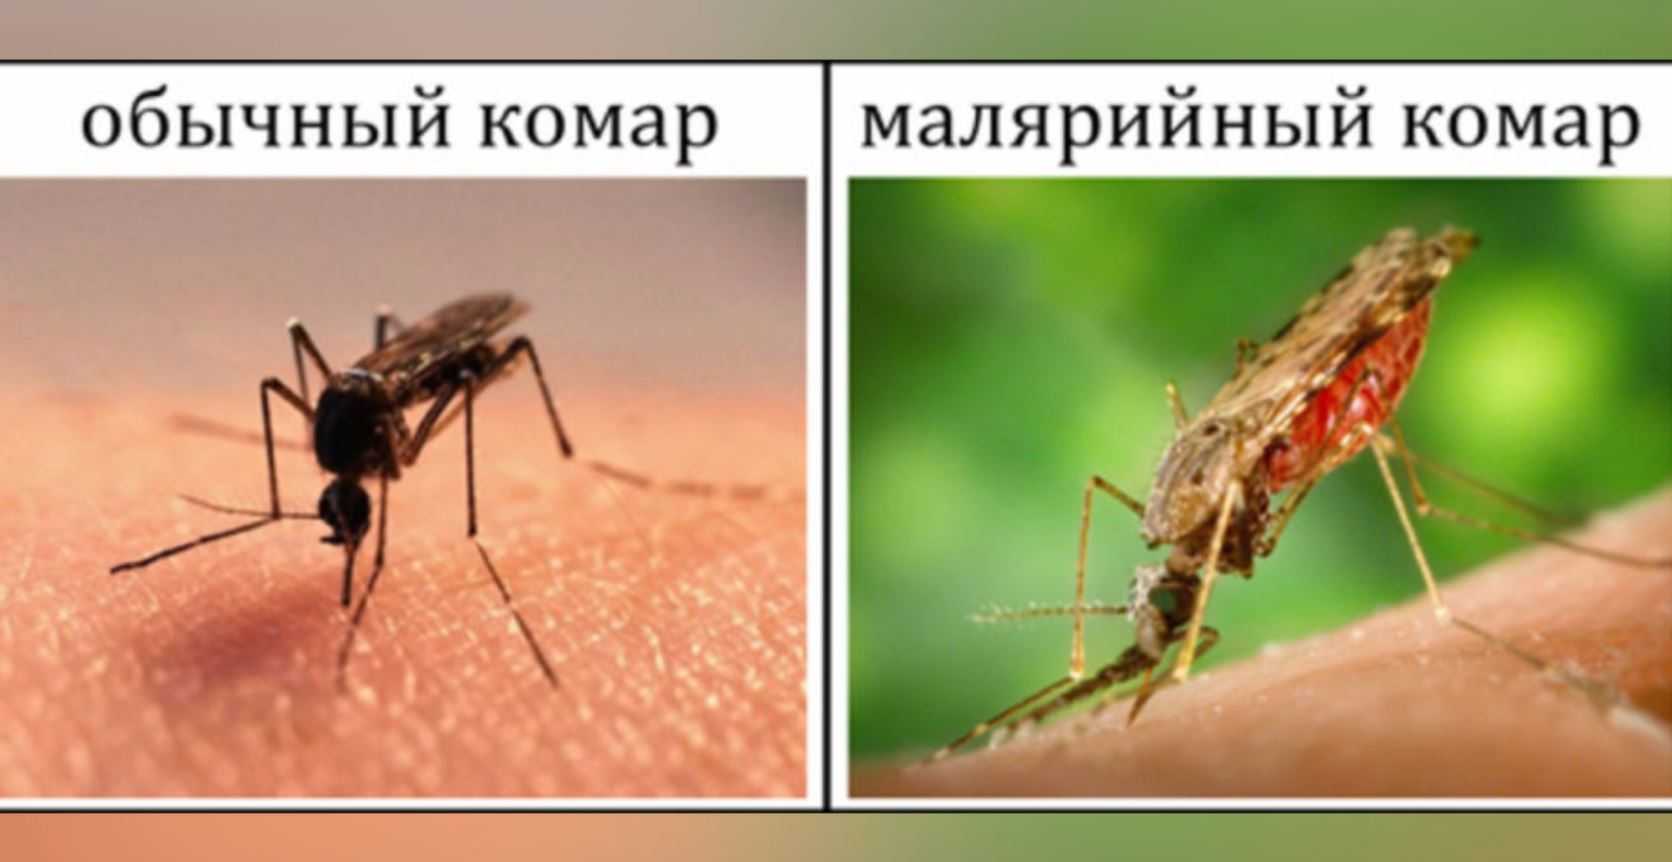 Малярия укусы комаров. Малярийный комар и малярия. Малярийный комар анофелес в России. Малярийный комар выглядит укус.